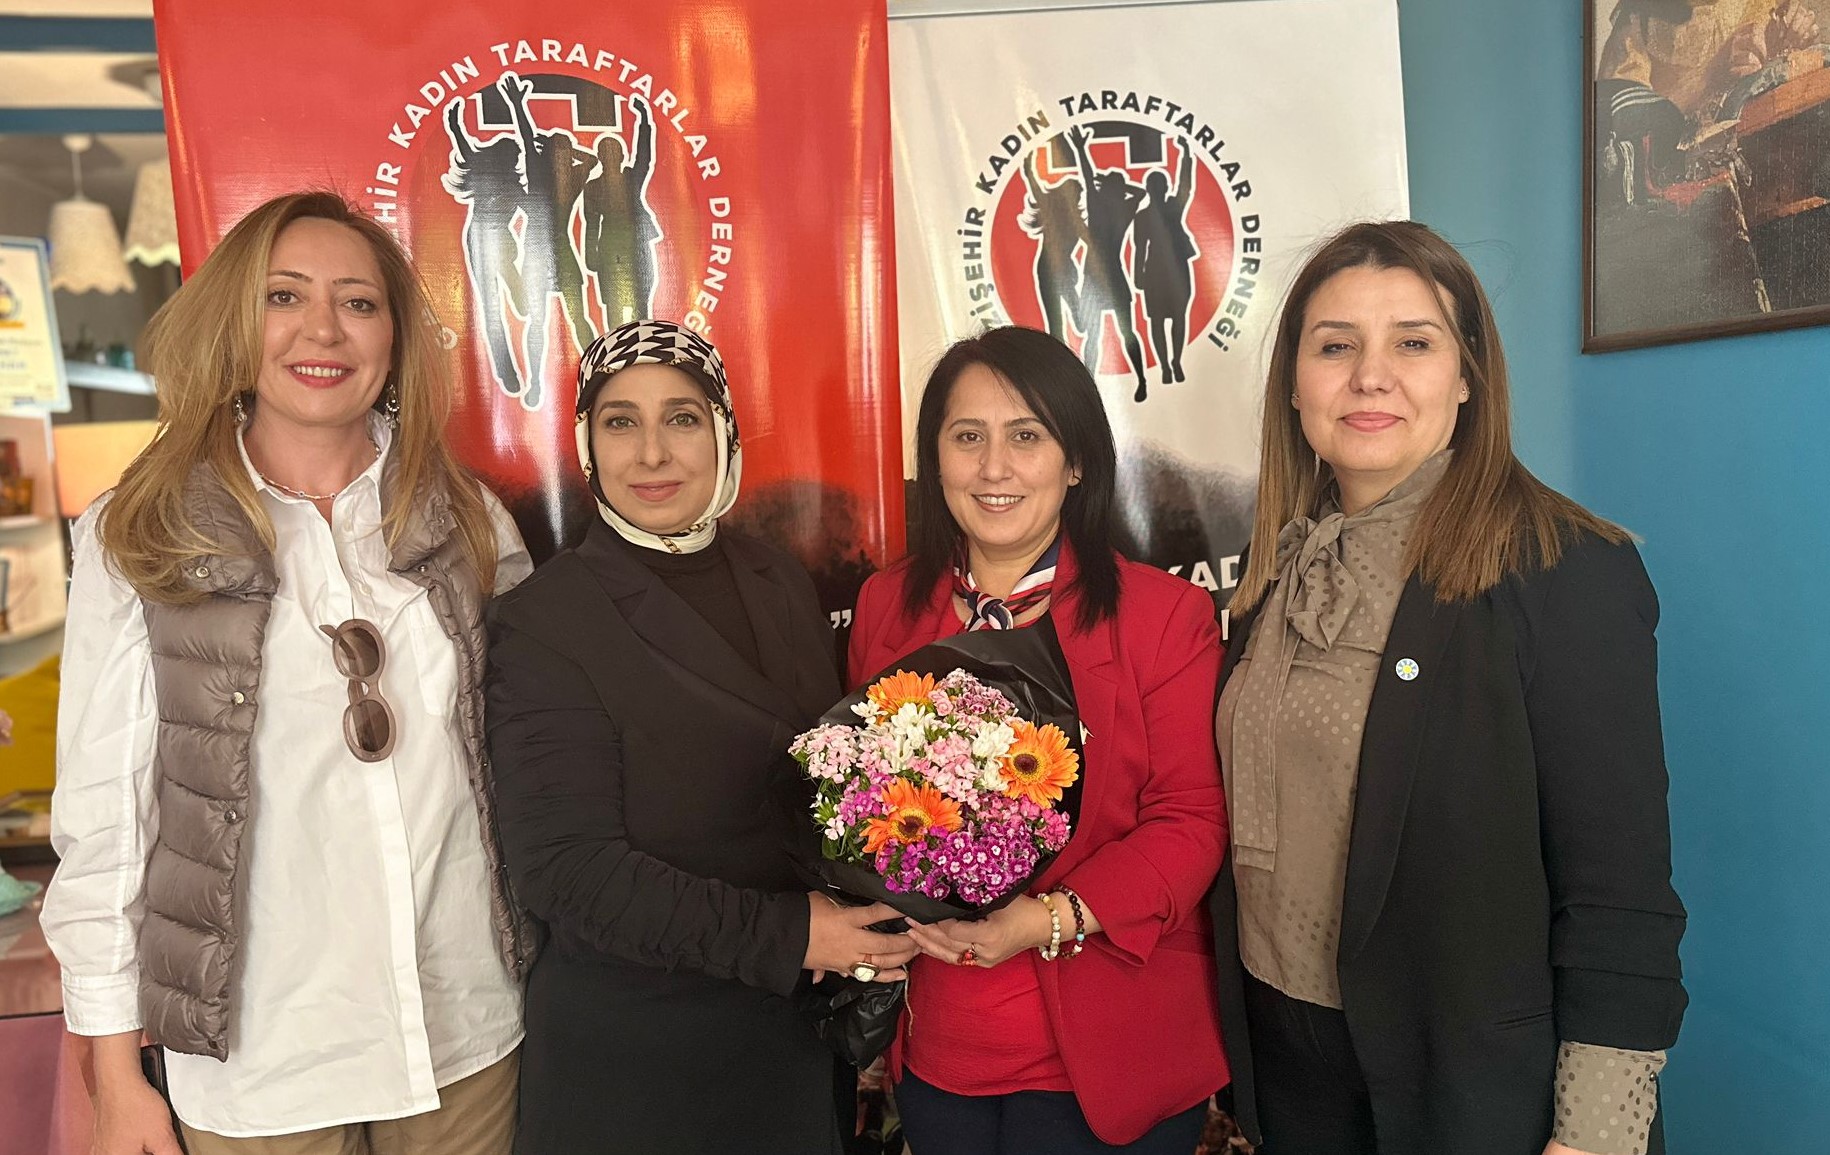 Gazişehir Kadın Taraftarlar Derneği Üyelerinden, 3 ayrı partiden 3 kadın aday adayı